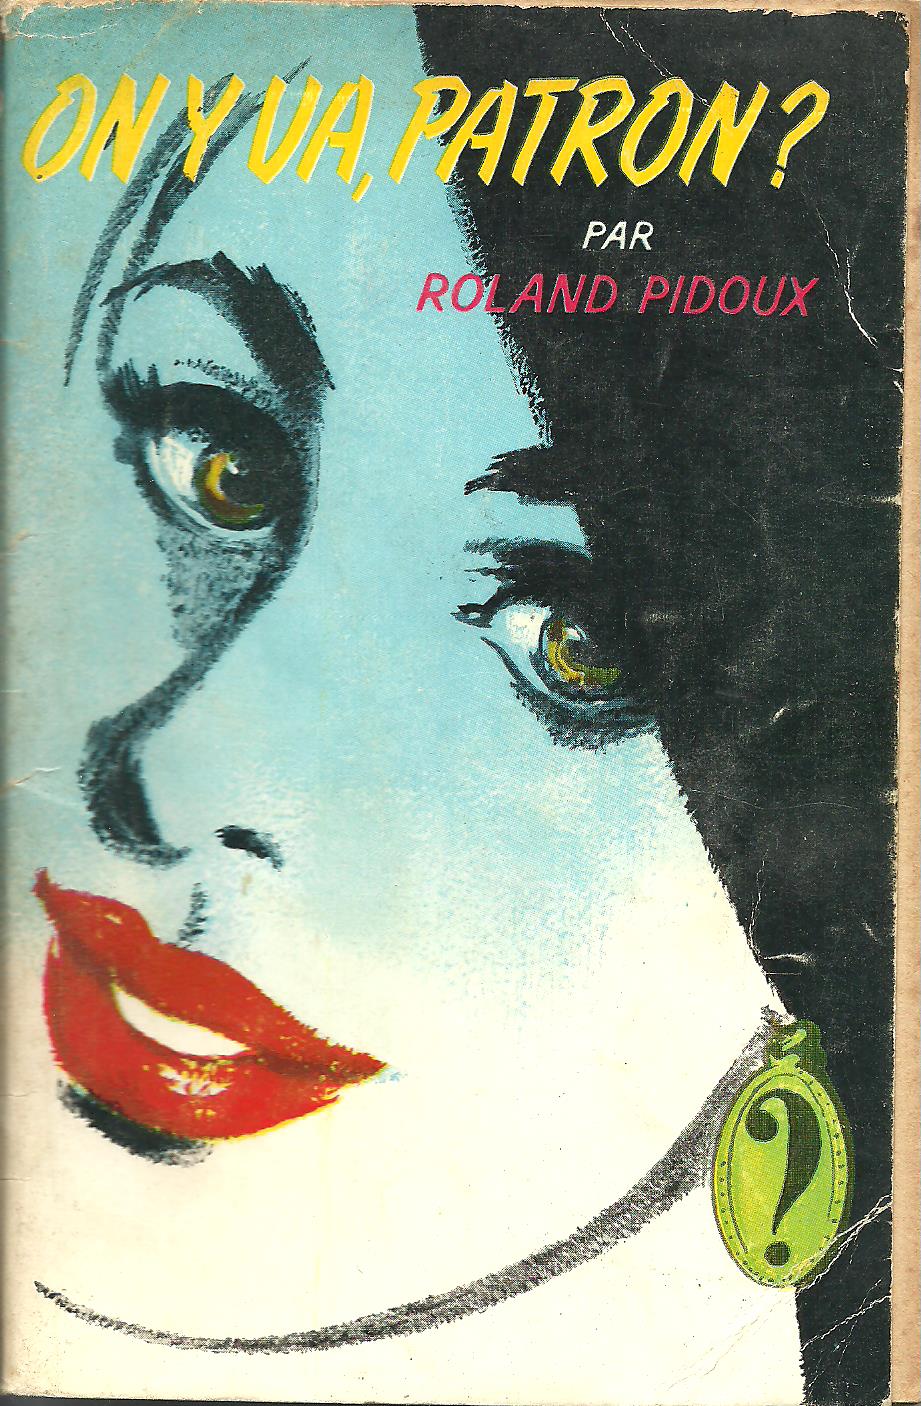 Couverture du roman policier de Roland pidoux : "On y va Patron?"